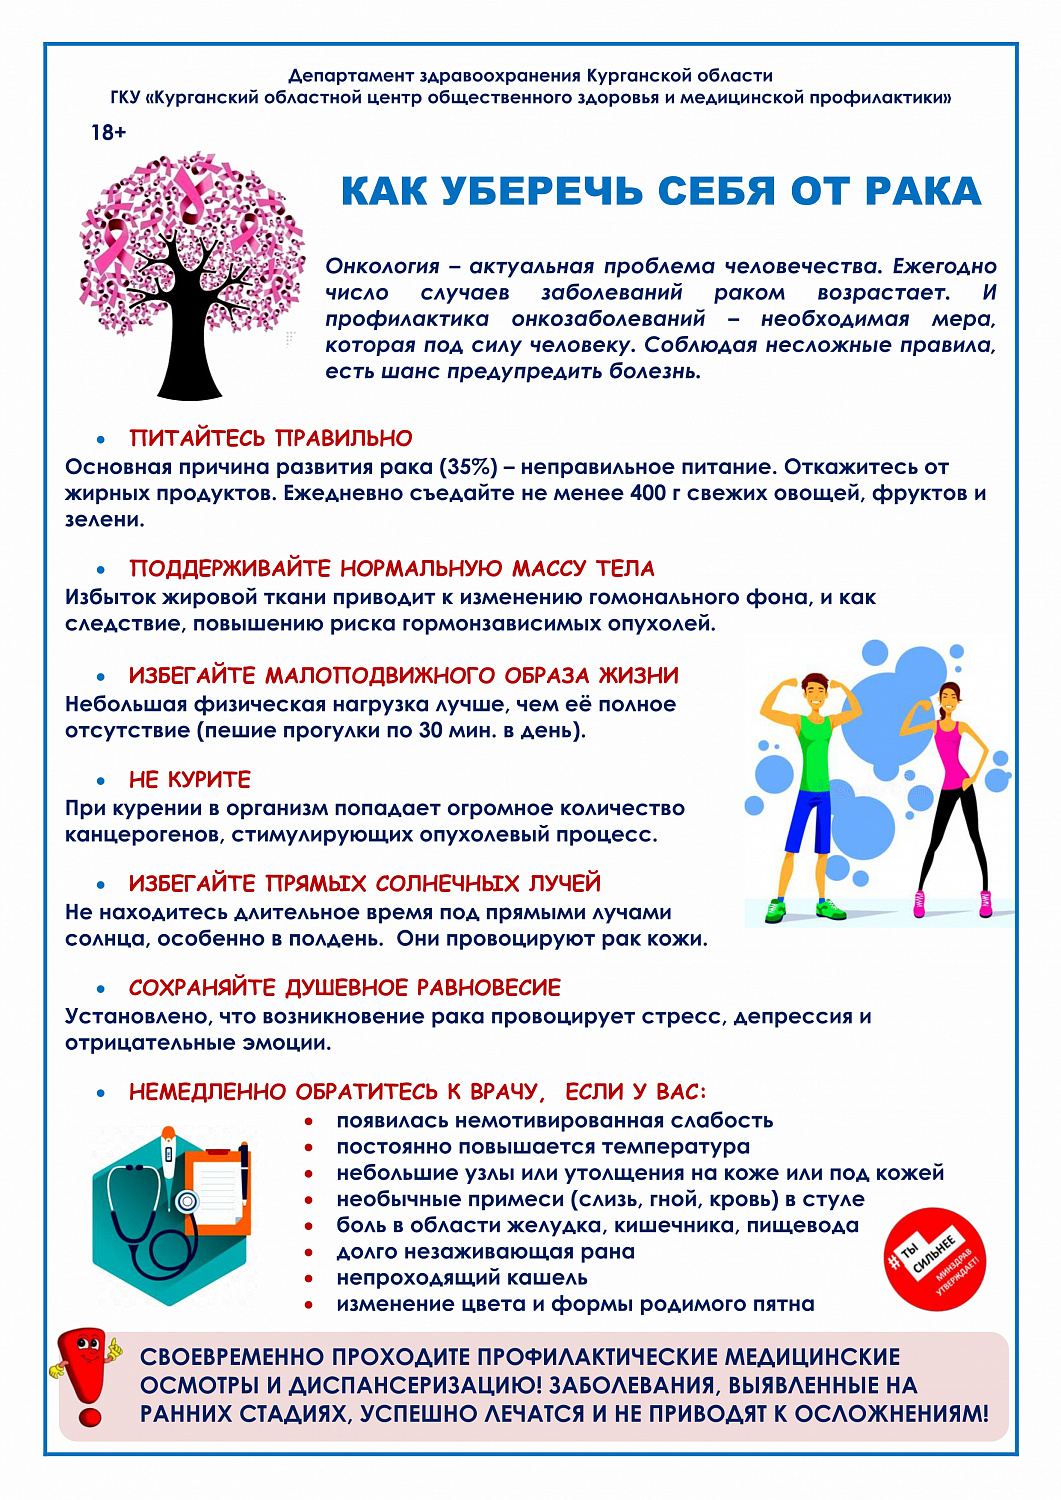 Министерство здравоохранения РФ с 30 января по 5 февраля проводит неделю профилактики онкологических заболеваний